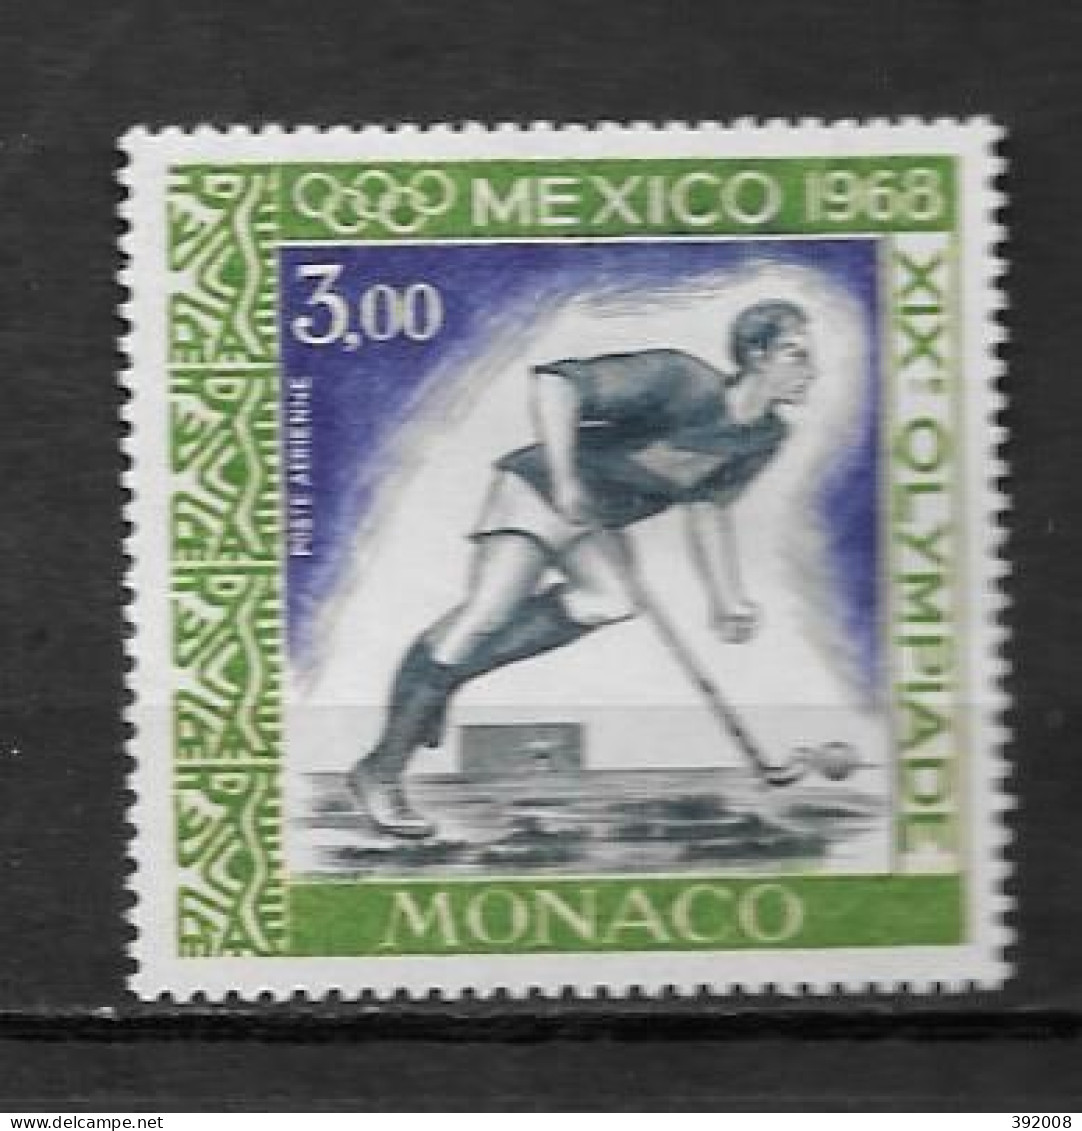 PA - 1968 - 92 **MNH - Jeux Olympiques De Mexico - Airmail